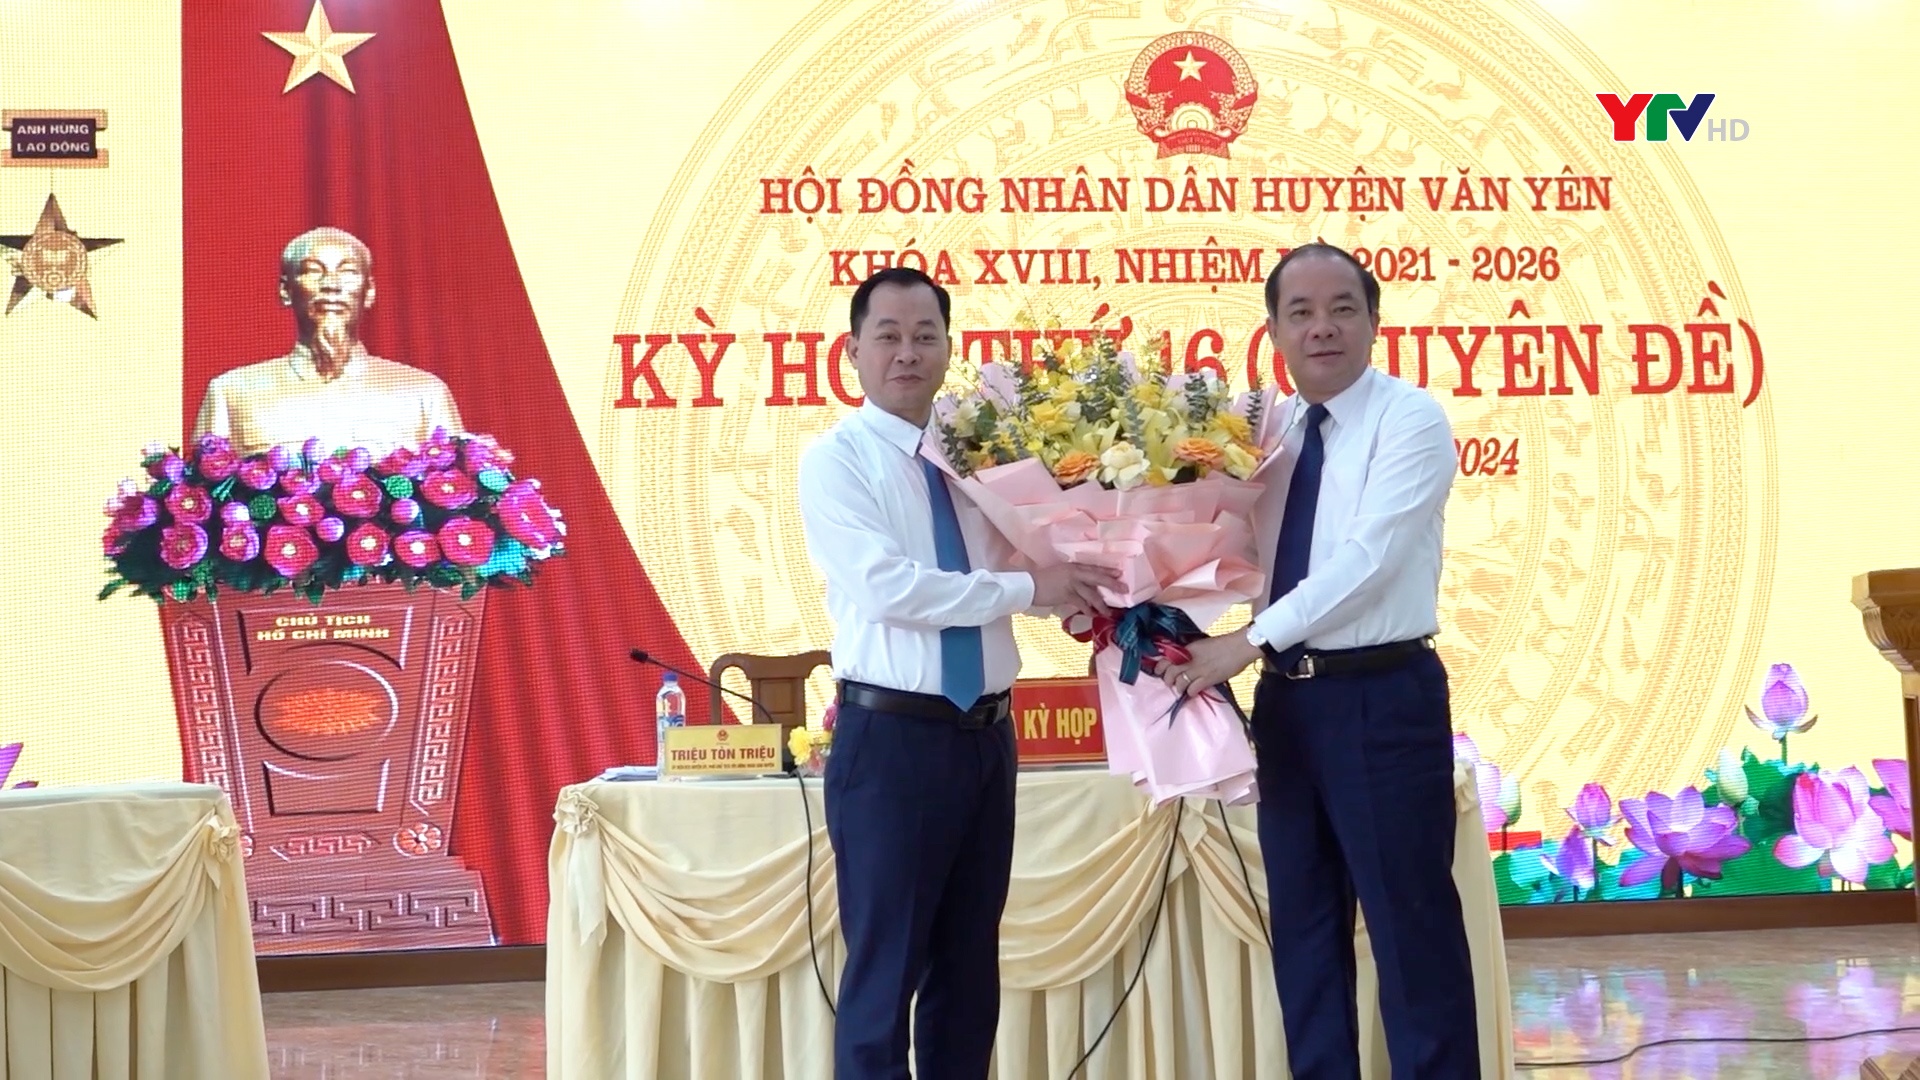 Đồng chí Lê Thành Hùng được bầu giữ chức Phó Chủ tịch UBND huyện Văn Yên